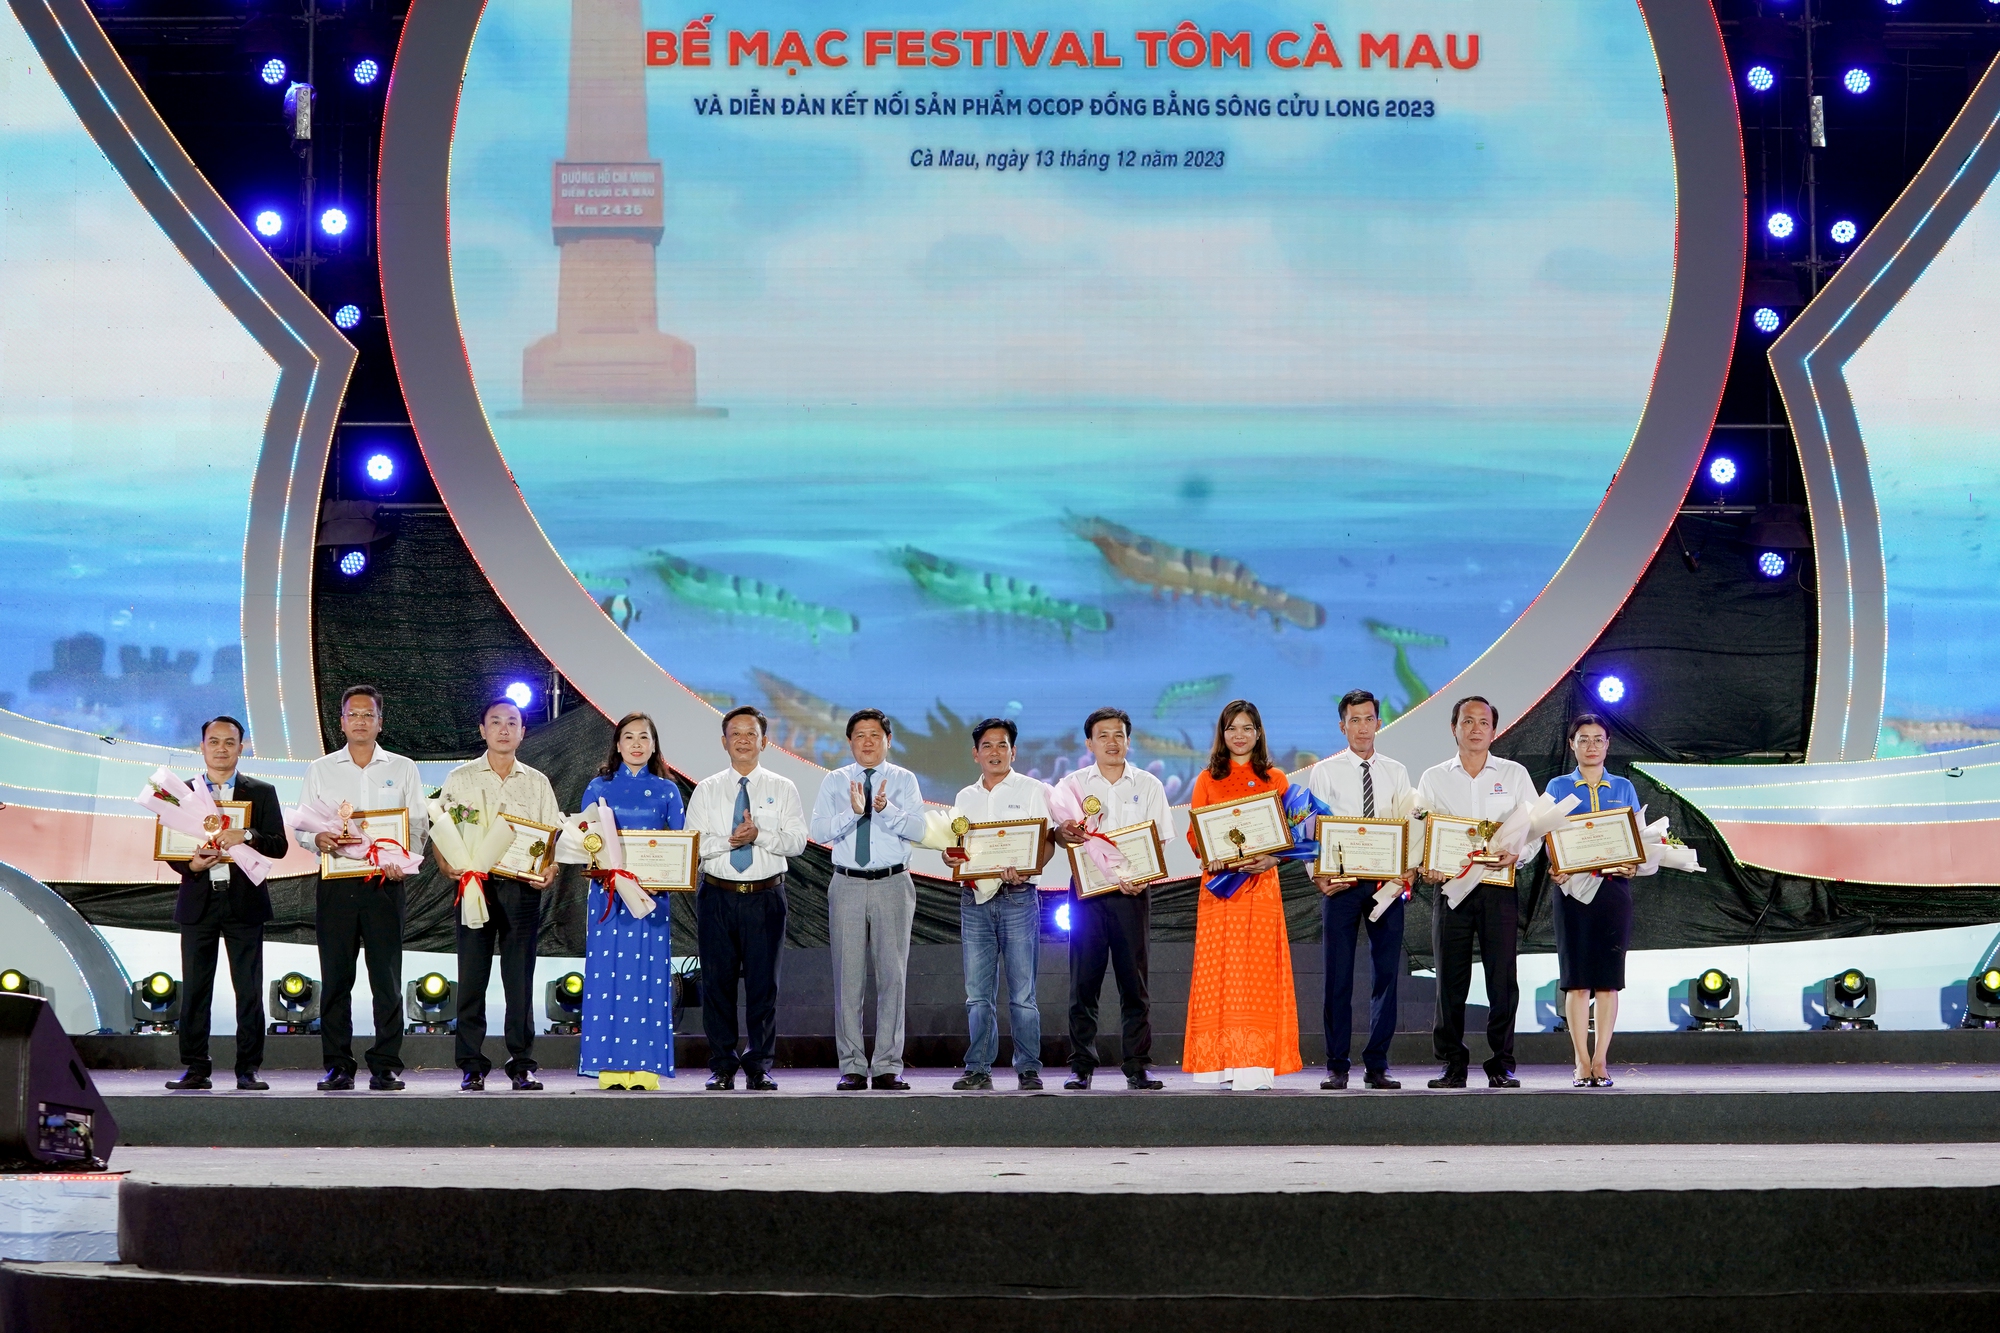 Chùm ảnh về hoạt động của VNPT Cà Mau đồng hành cùng Festival Tôm Cà Mau năm 2023 - Ảnh 1.